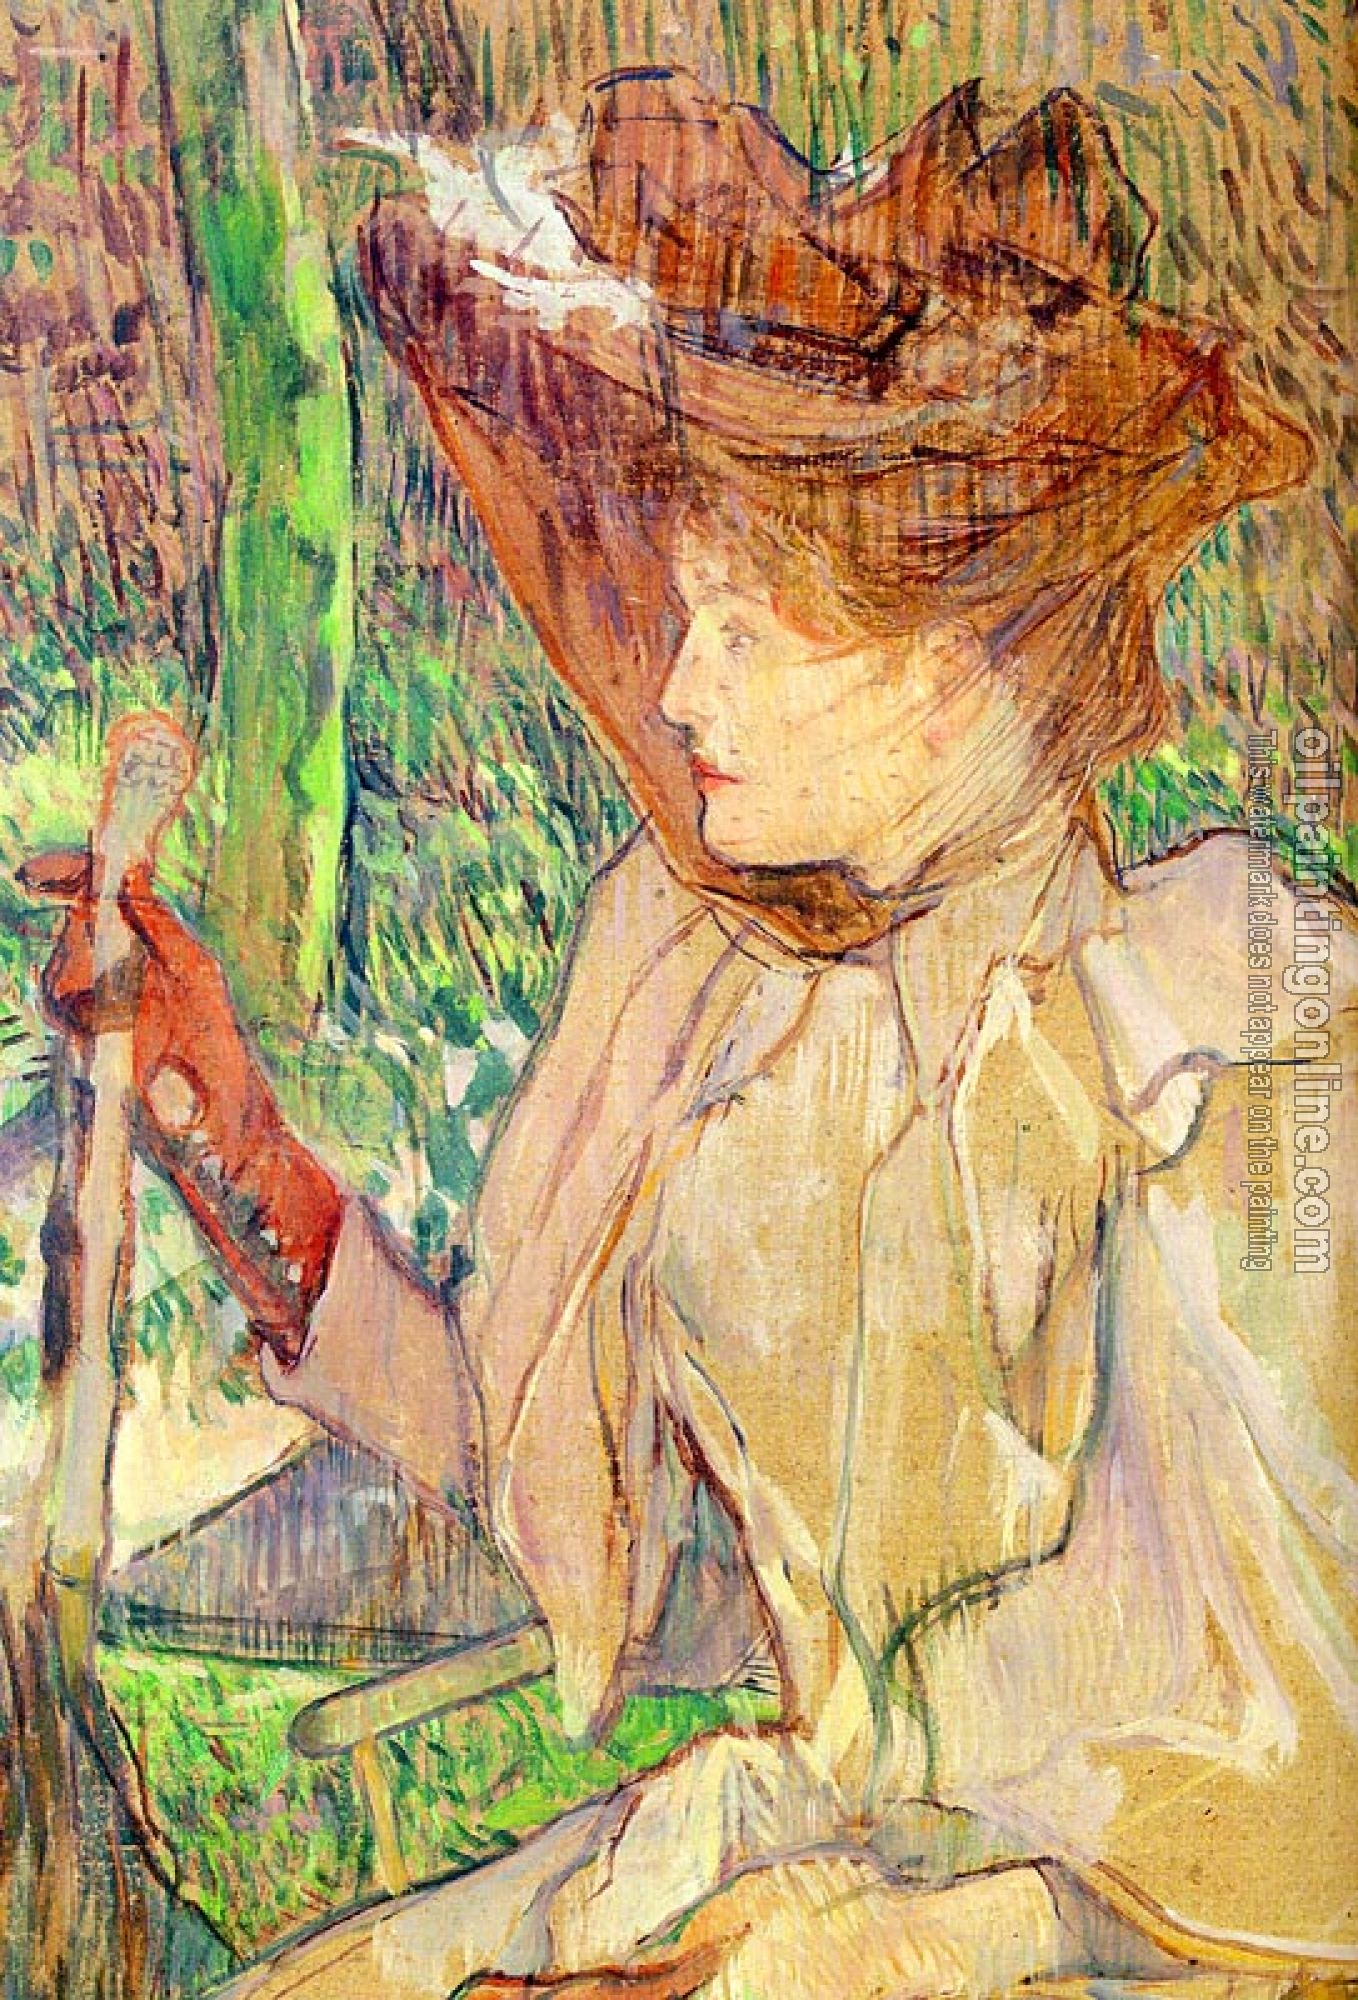 Toulouse-Lautrec, Henri de - Portrait of Honorine Platzer,Woman with Gloves